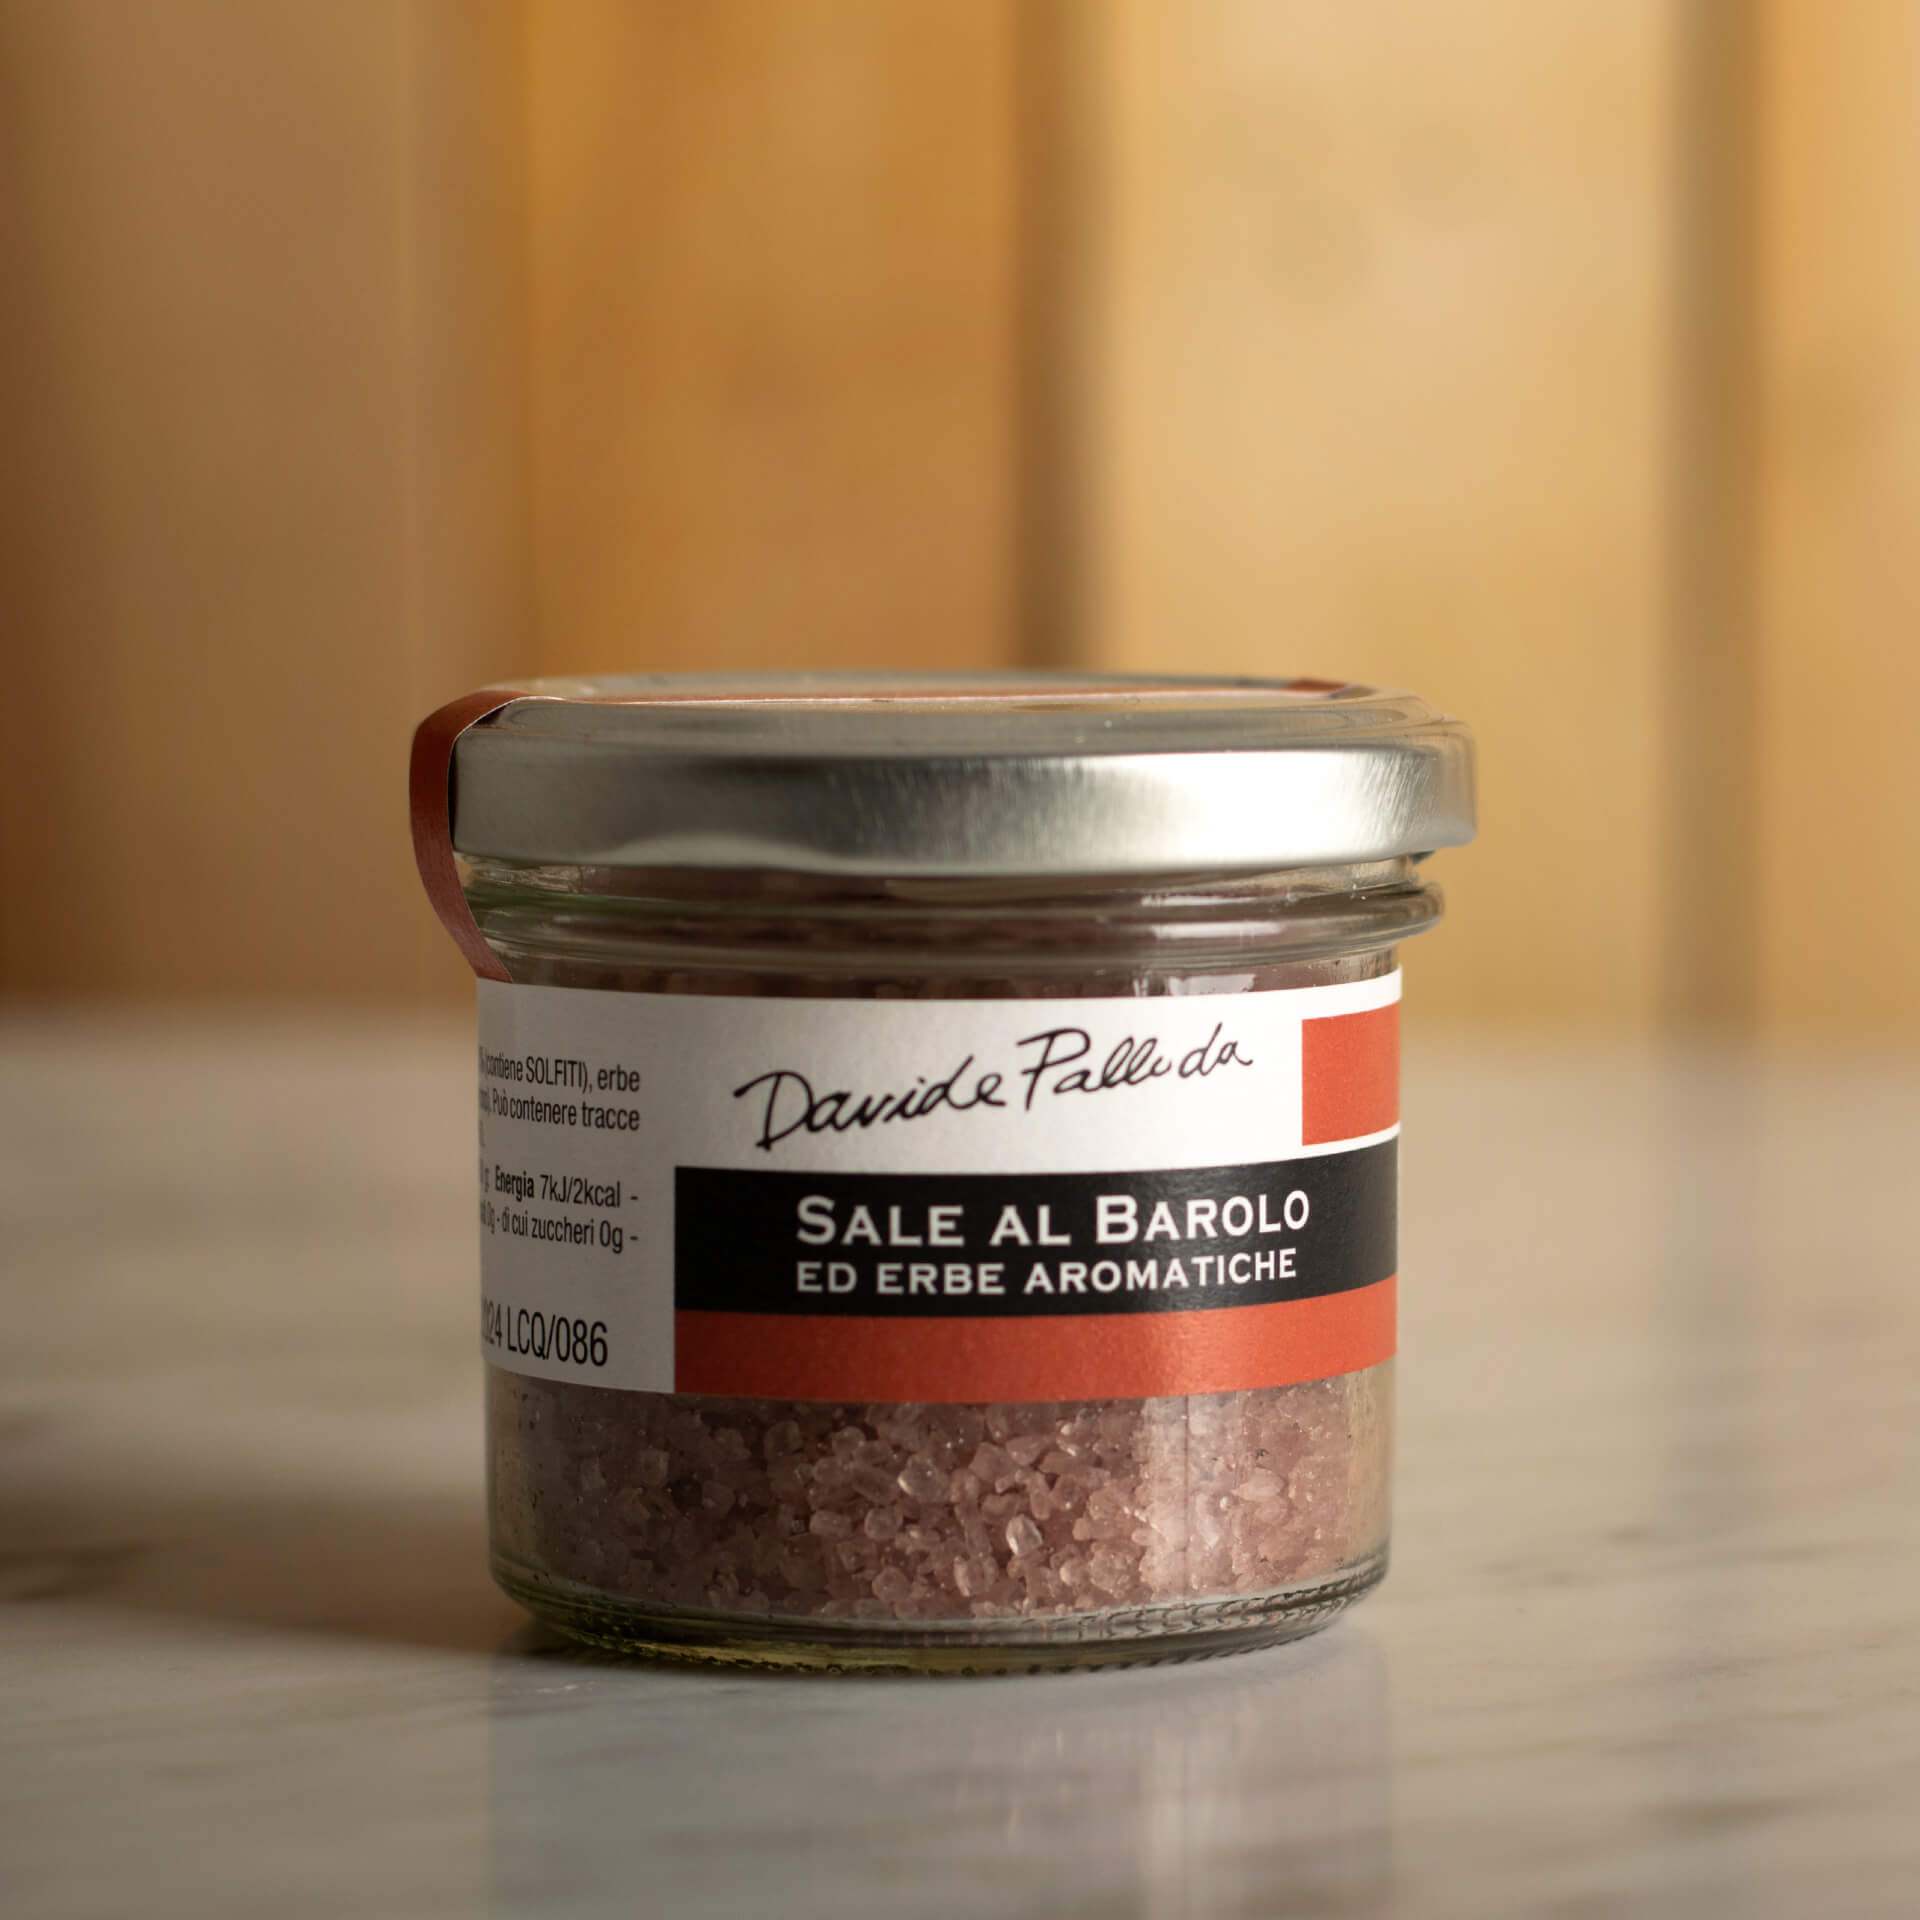 Barolo and Aromatic- Herb Salt 